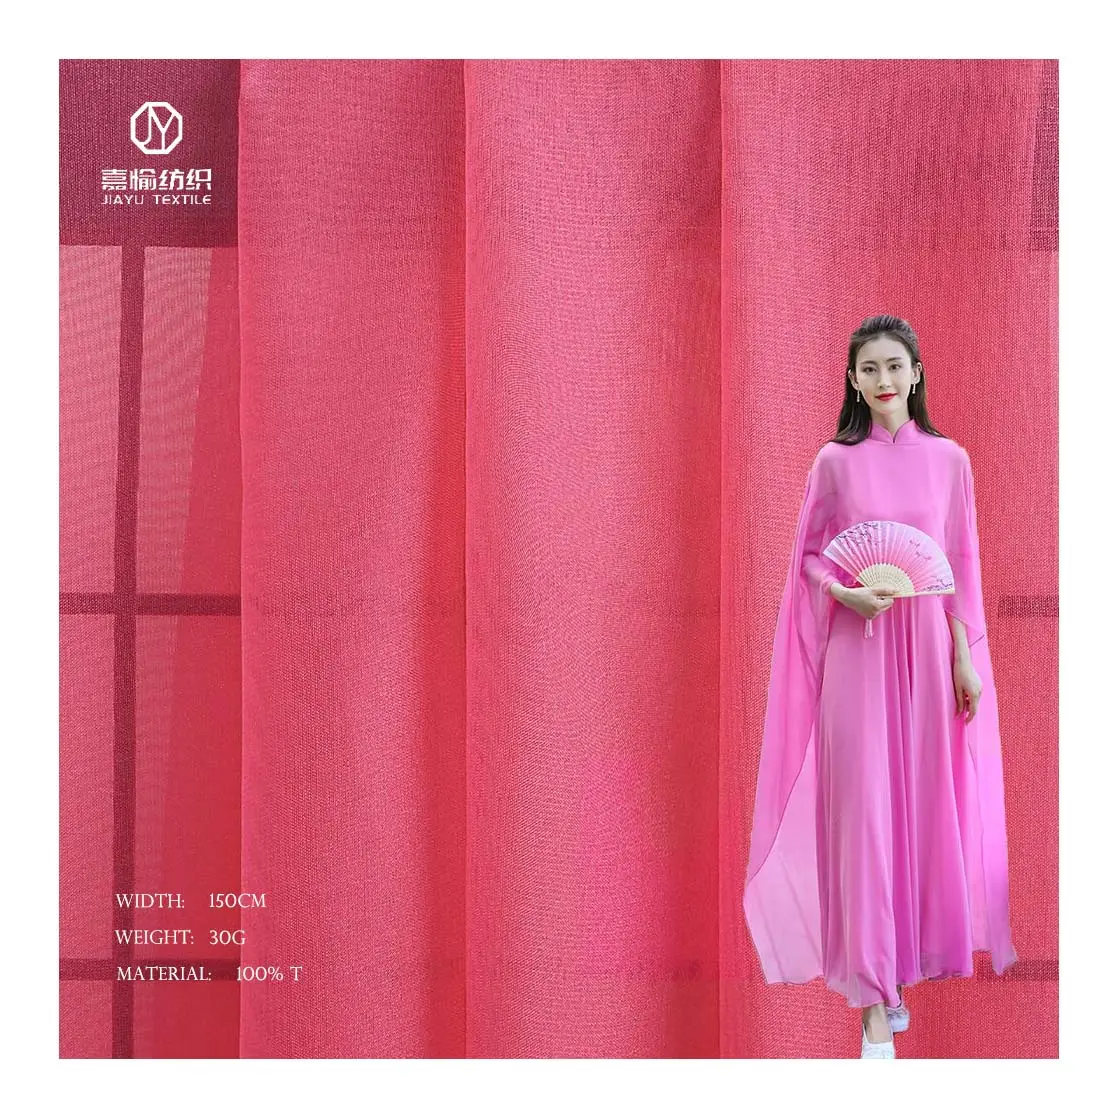 30D Roze Meisje Prinses Rok Polyester Materiaal Mode Kleding Textiel Vlakte Tulle Chiffon Stof Voor Vrouwen